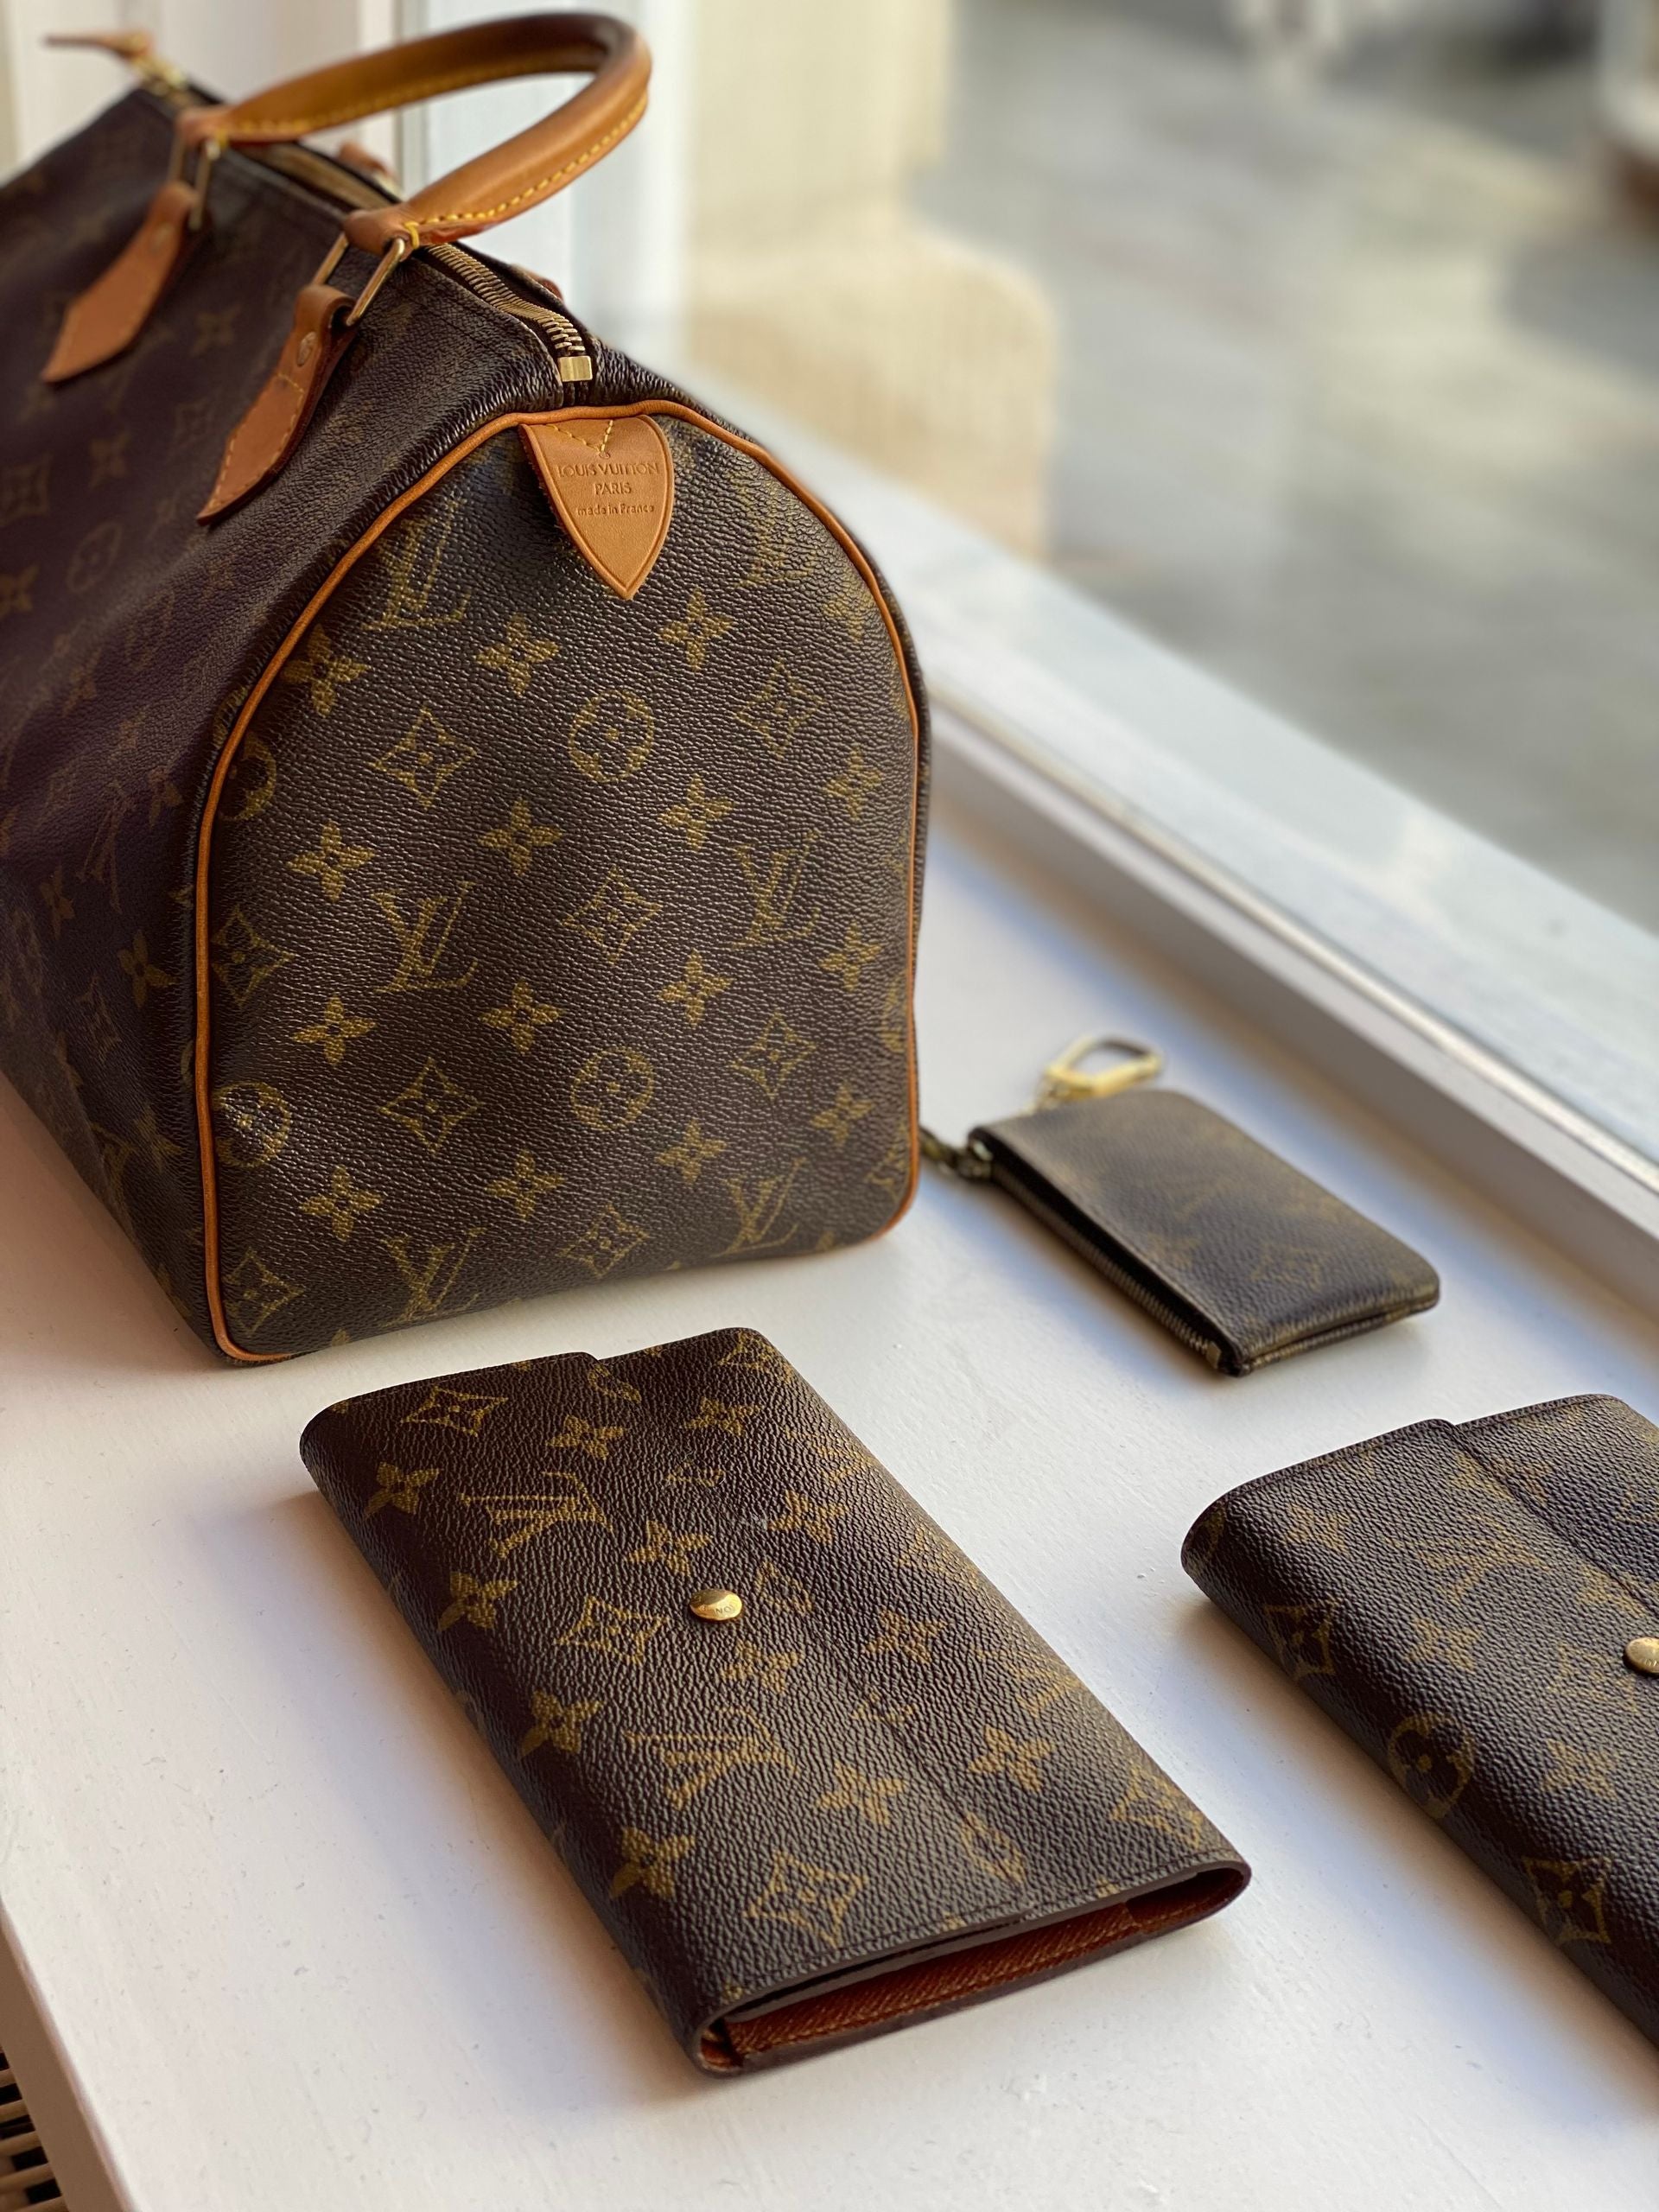 Louis Vuitton Damier Azur Favorite PM - Ankauf & Verkauf Second Hand  Designertaschen und Accessoires